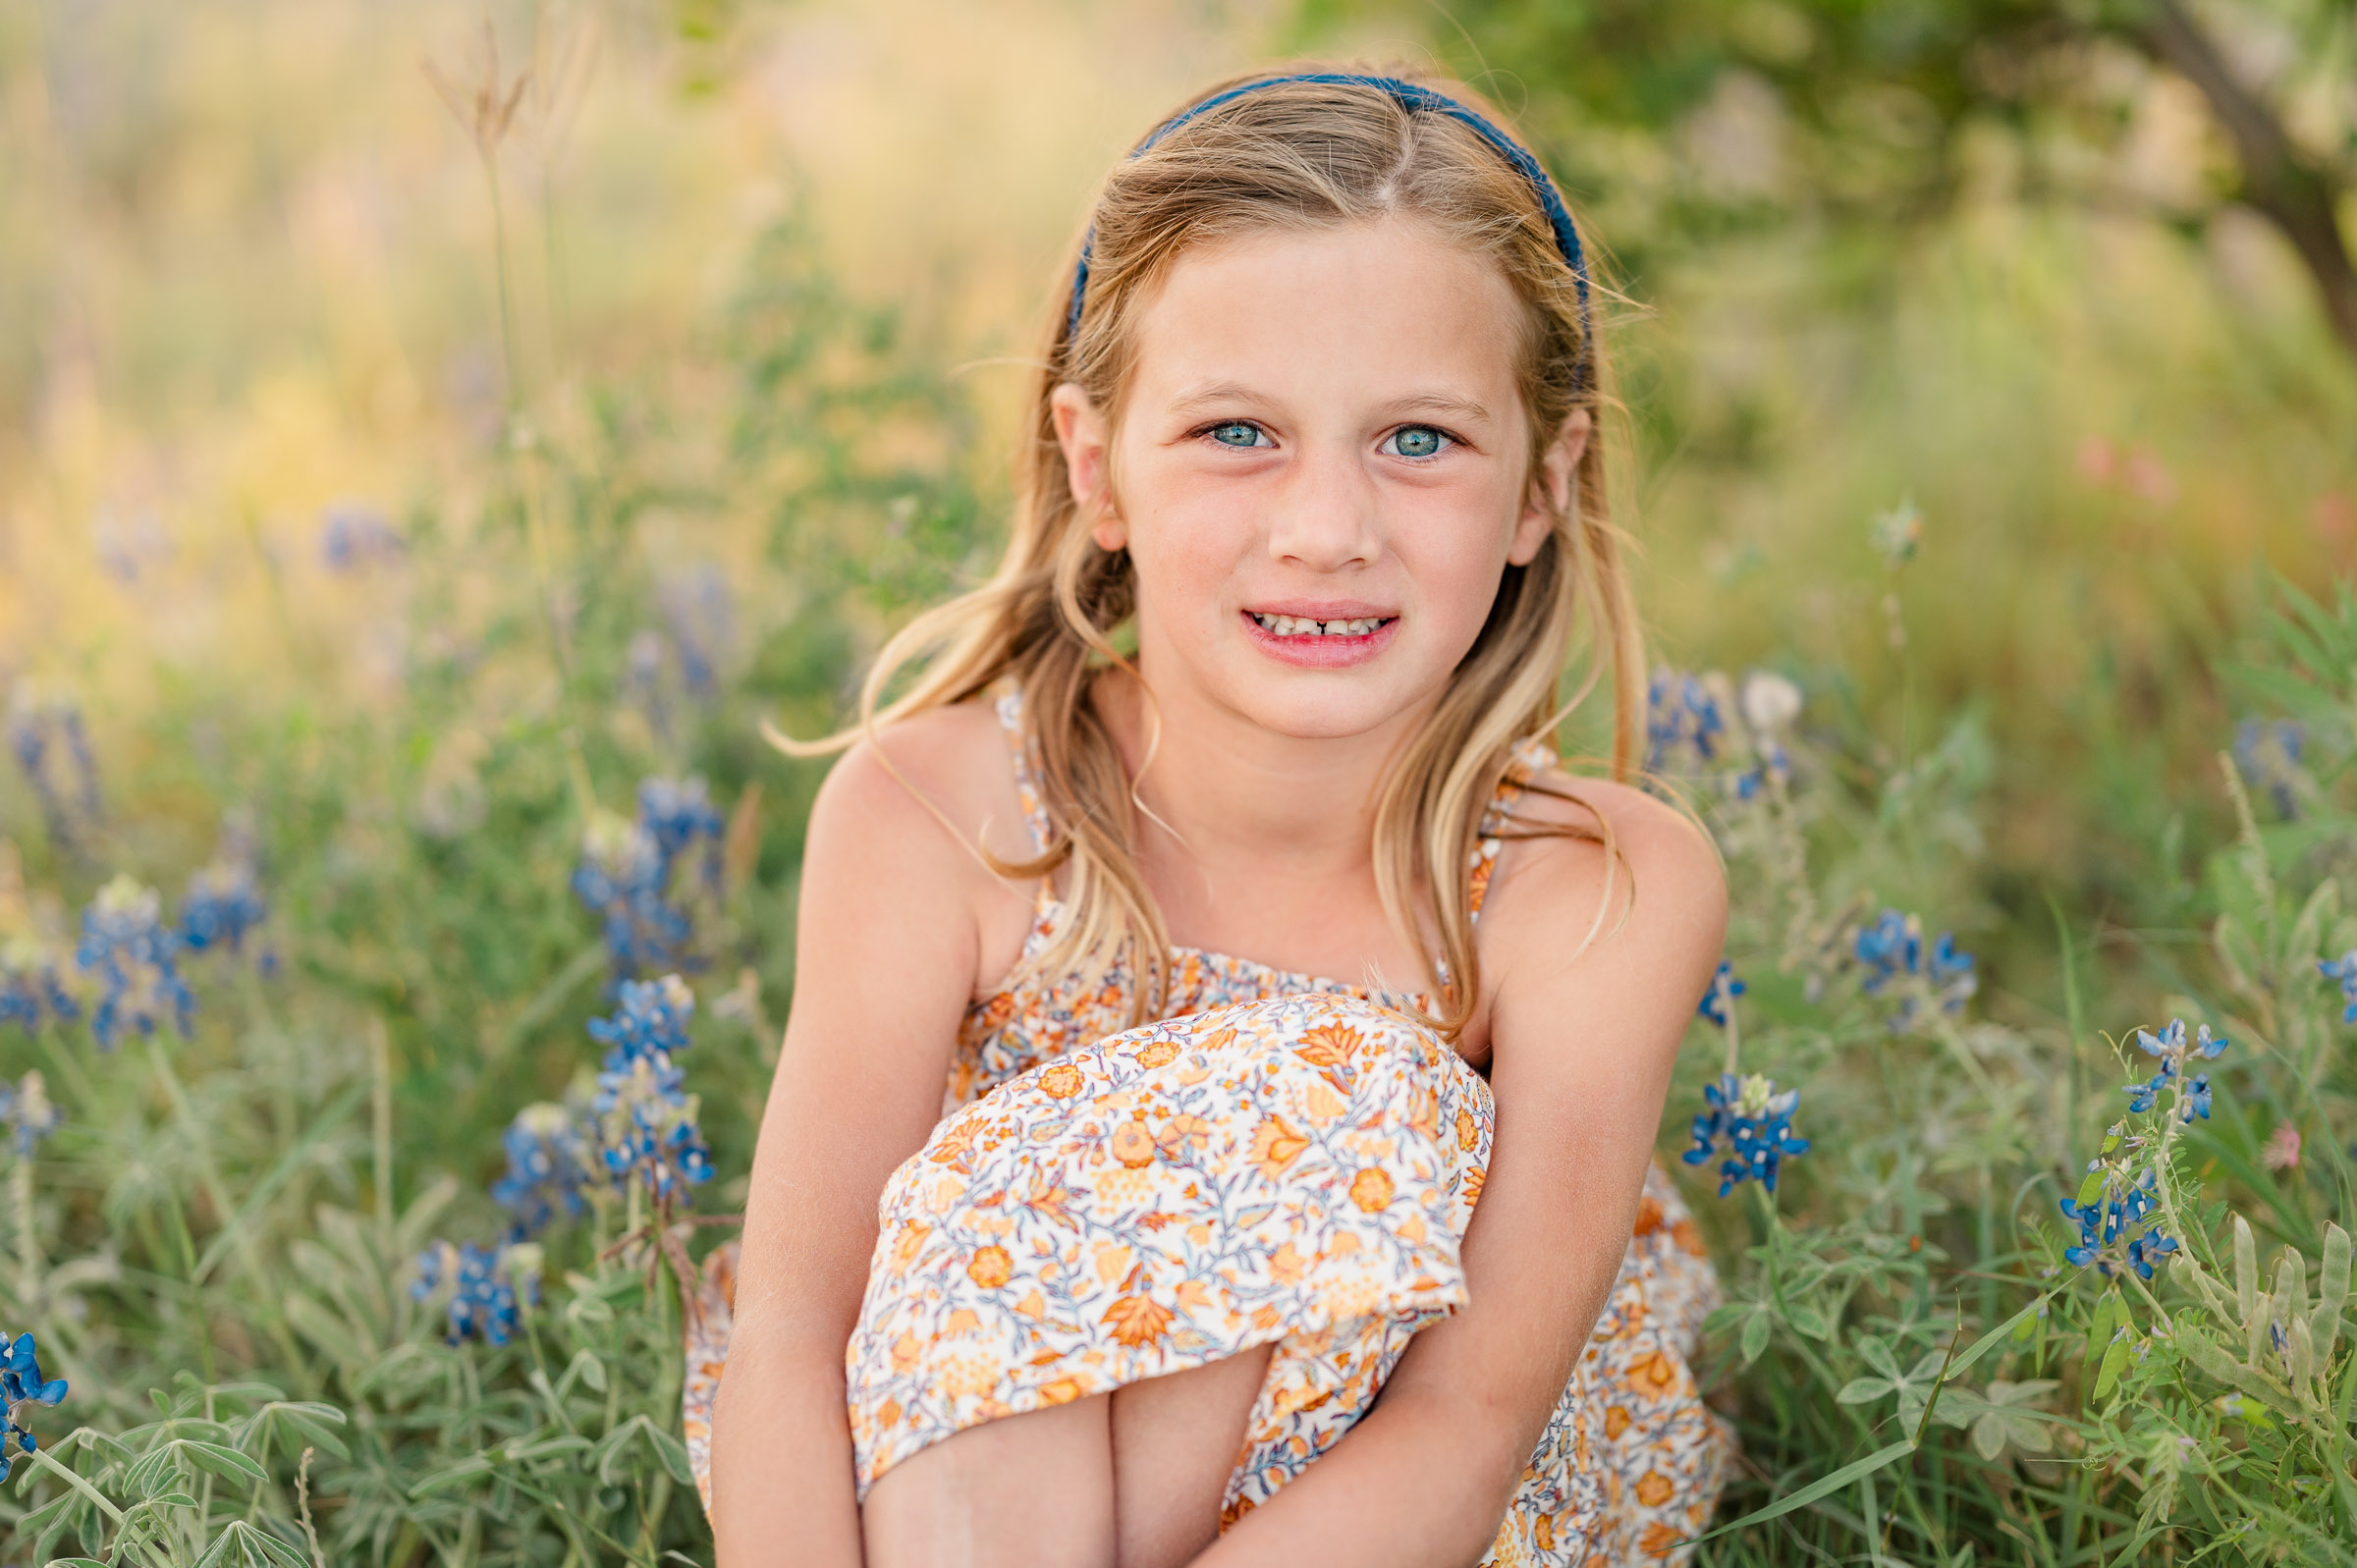 Beautiful golden portrait of a little girl sitting in San Antonio bluebonnets.